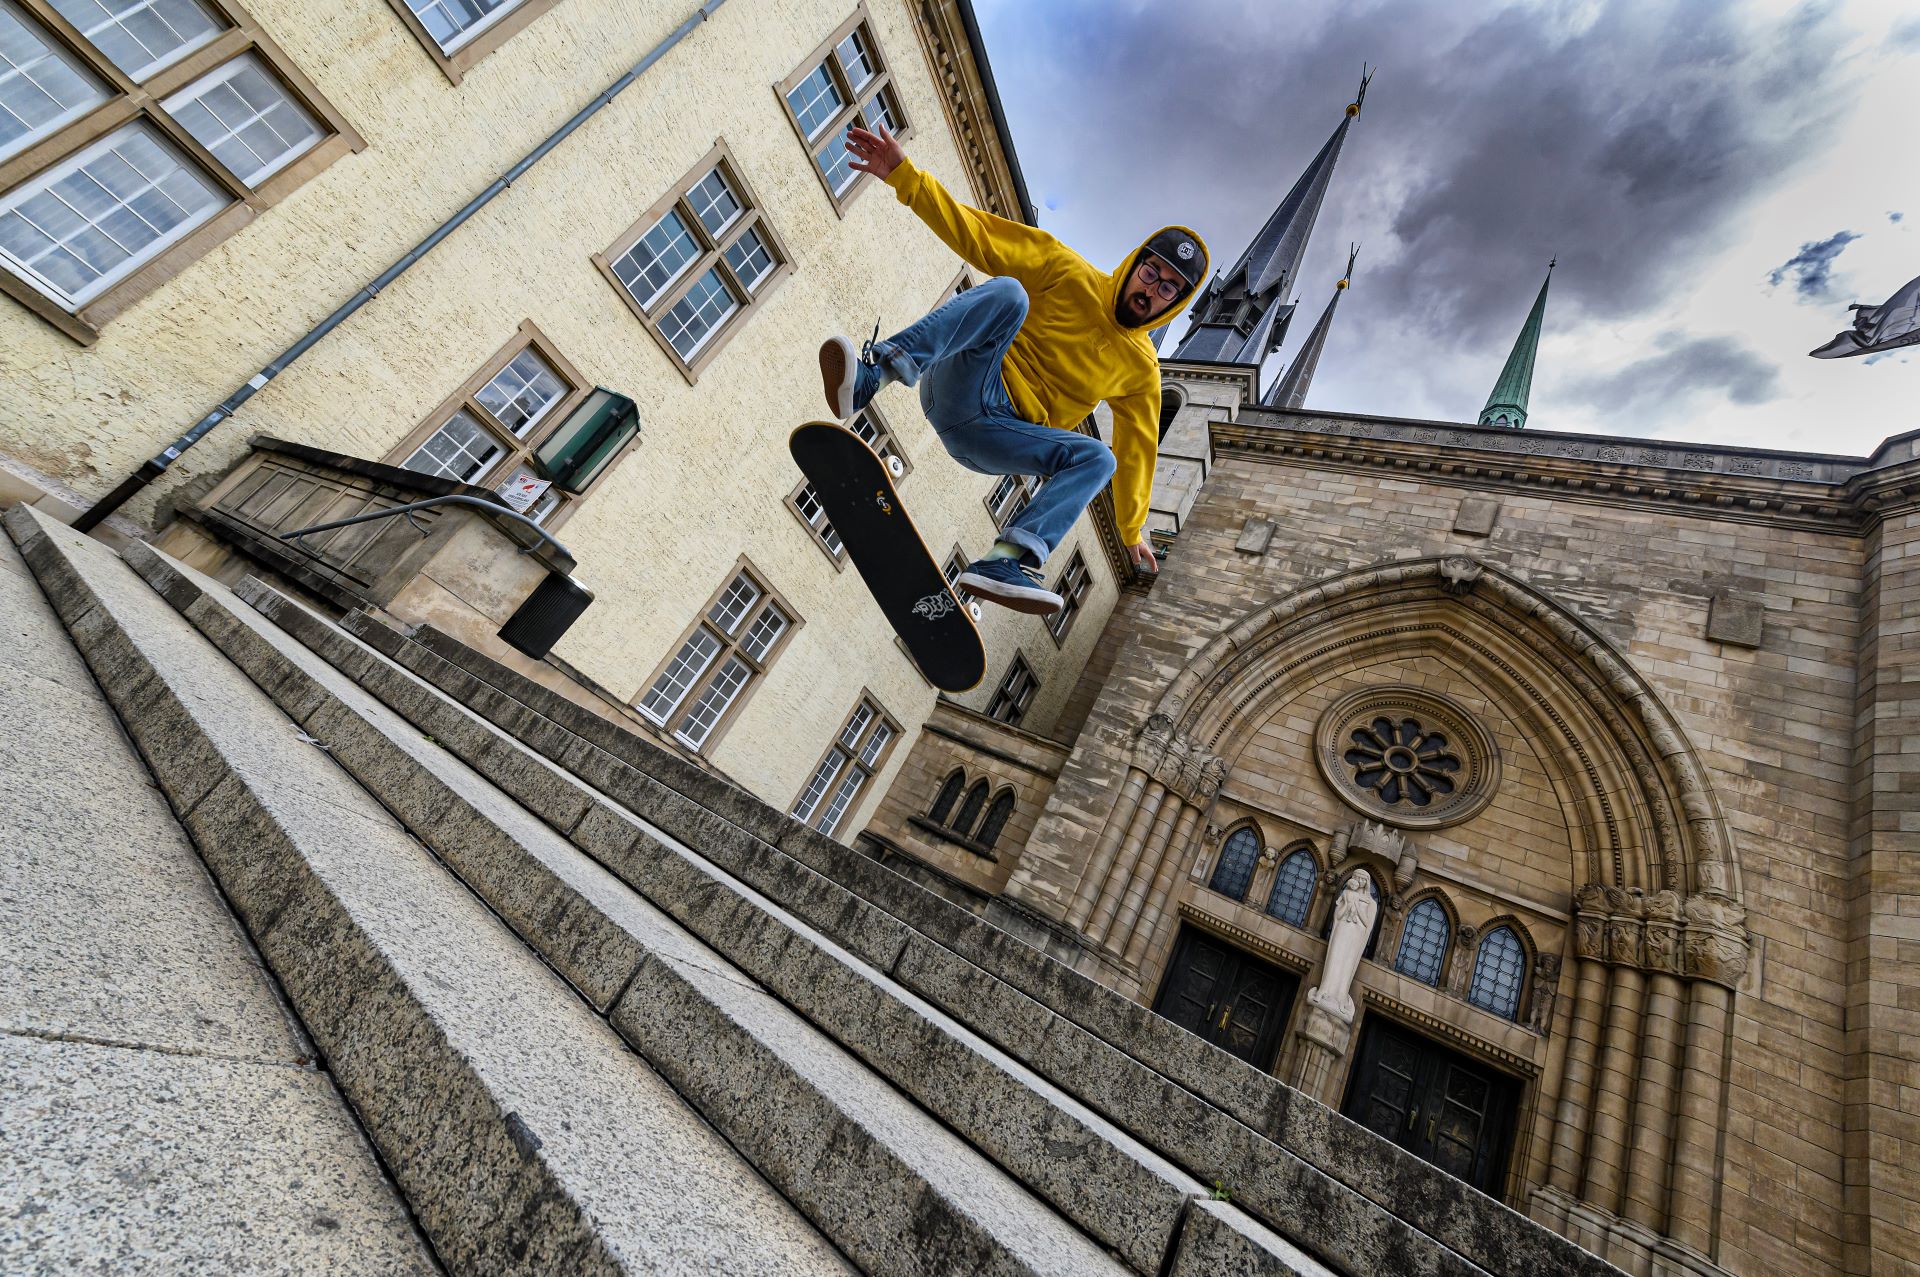 Ein Skateboarder in gelbem Kapuzenpulli und blauer Jeans macht einen Trick auf einer Treppe vor einer Kathedrale in Luxemburg.